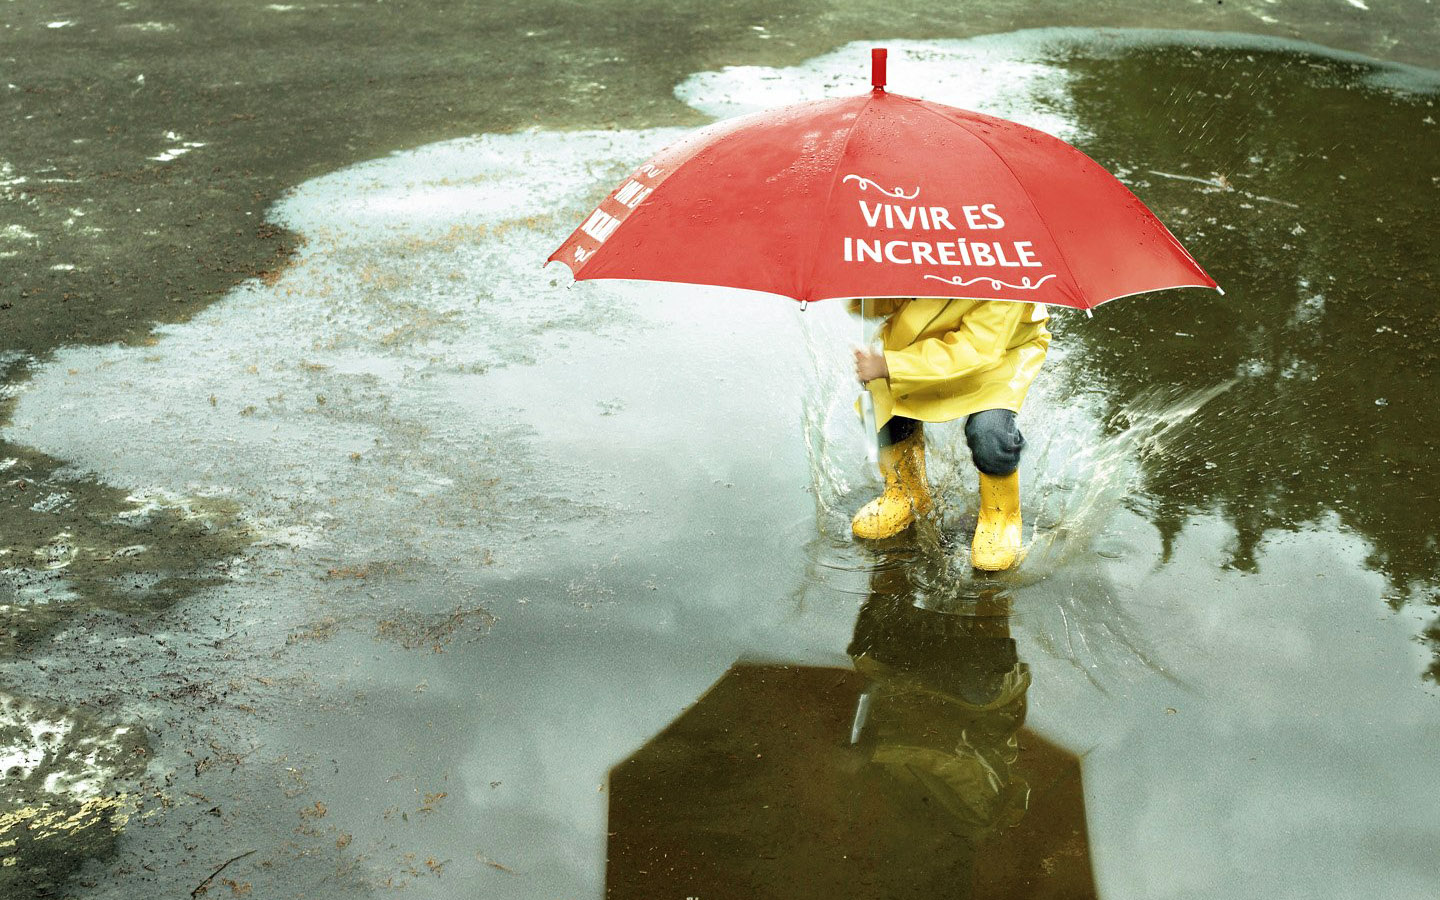 عکس پروفایل احساسی بچه در باران با تیتر اسپانیایی vivir es increible یا زندگی باور نکردنی است